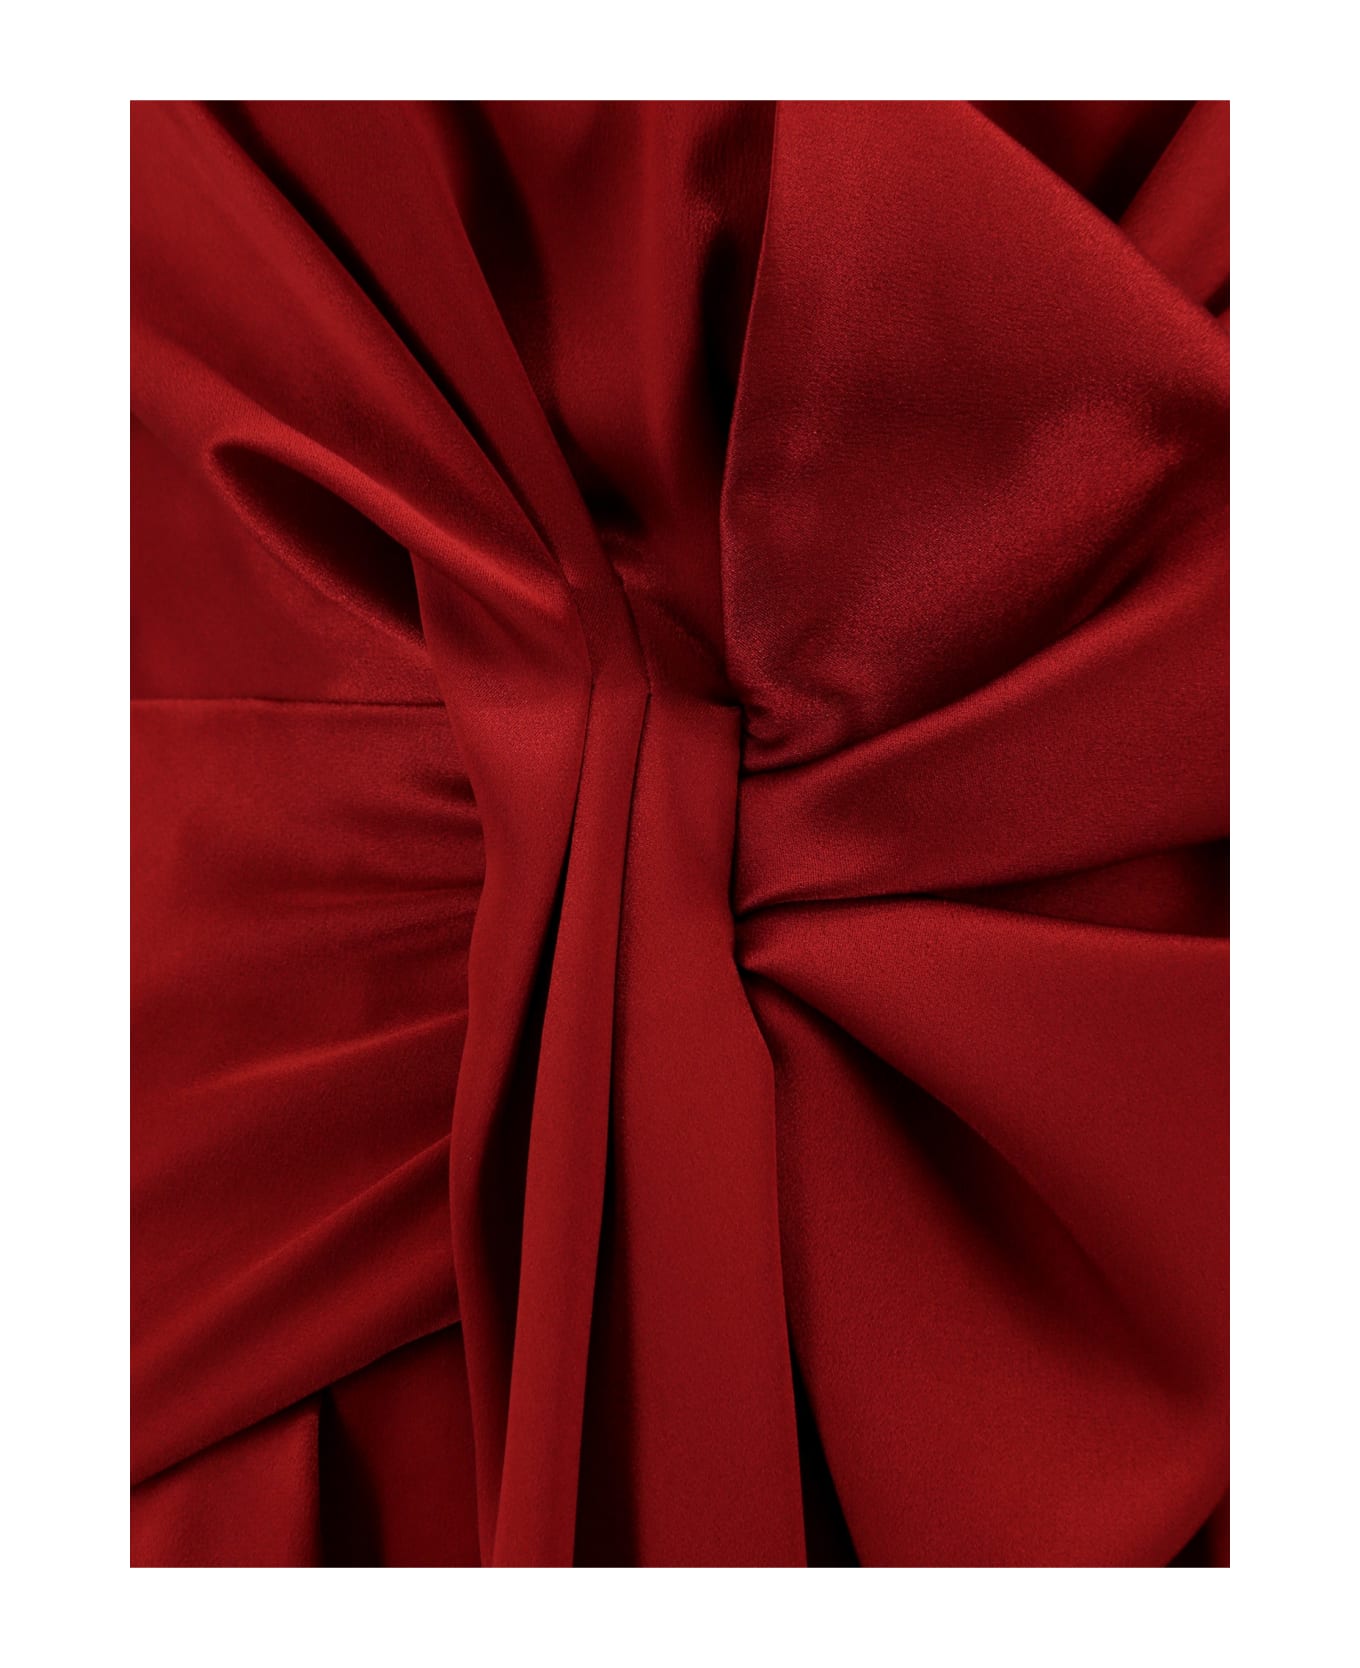 Alberta Ferretti Dress - Red